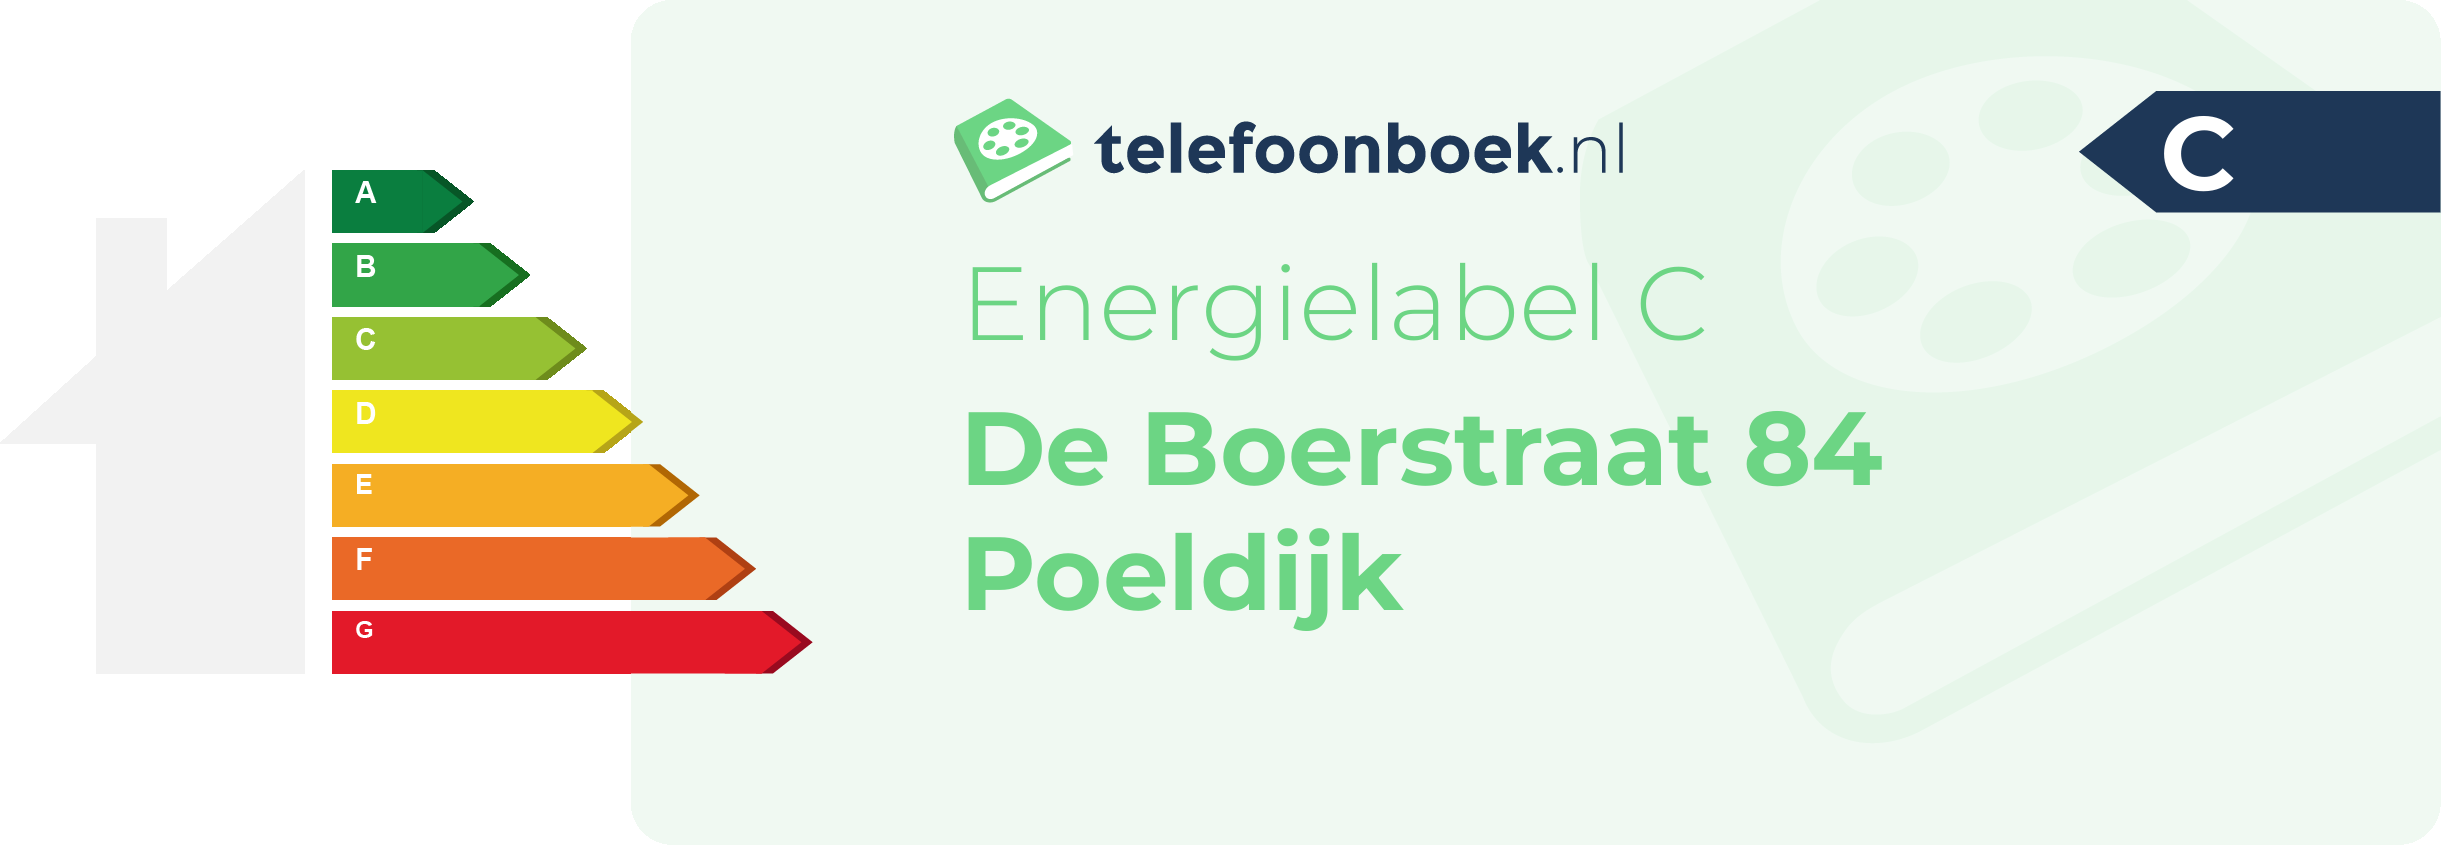 Energielabel De Boerstraat 84 Poeldijk